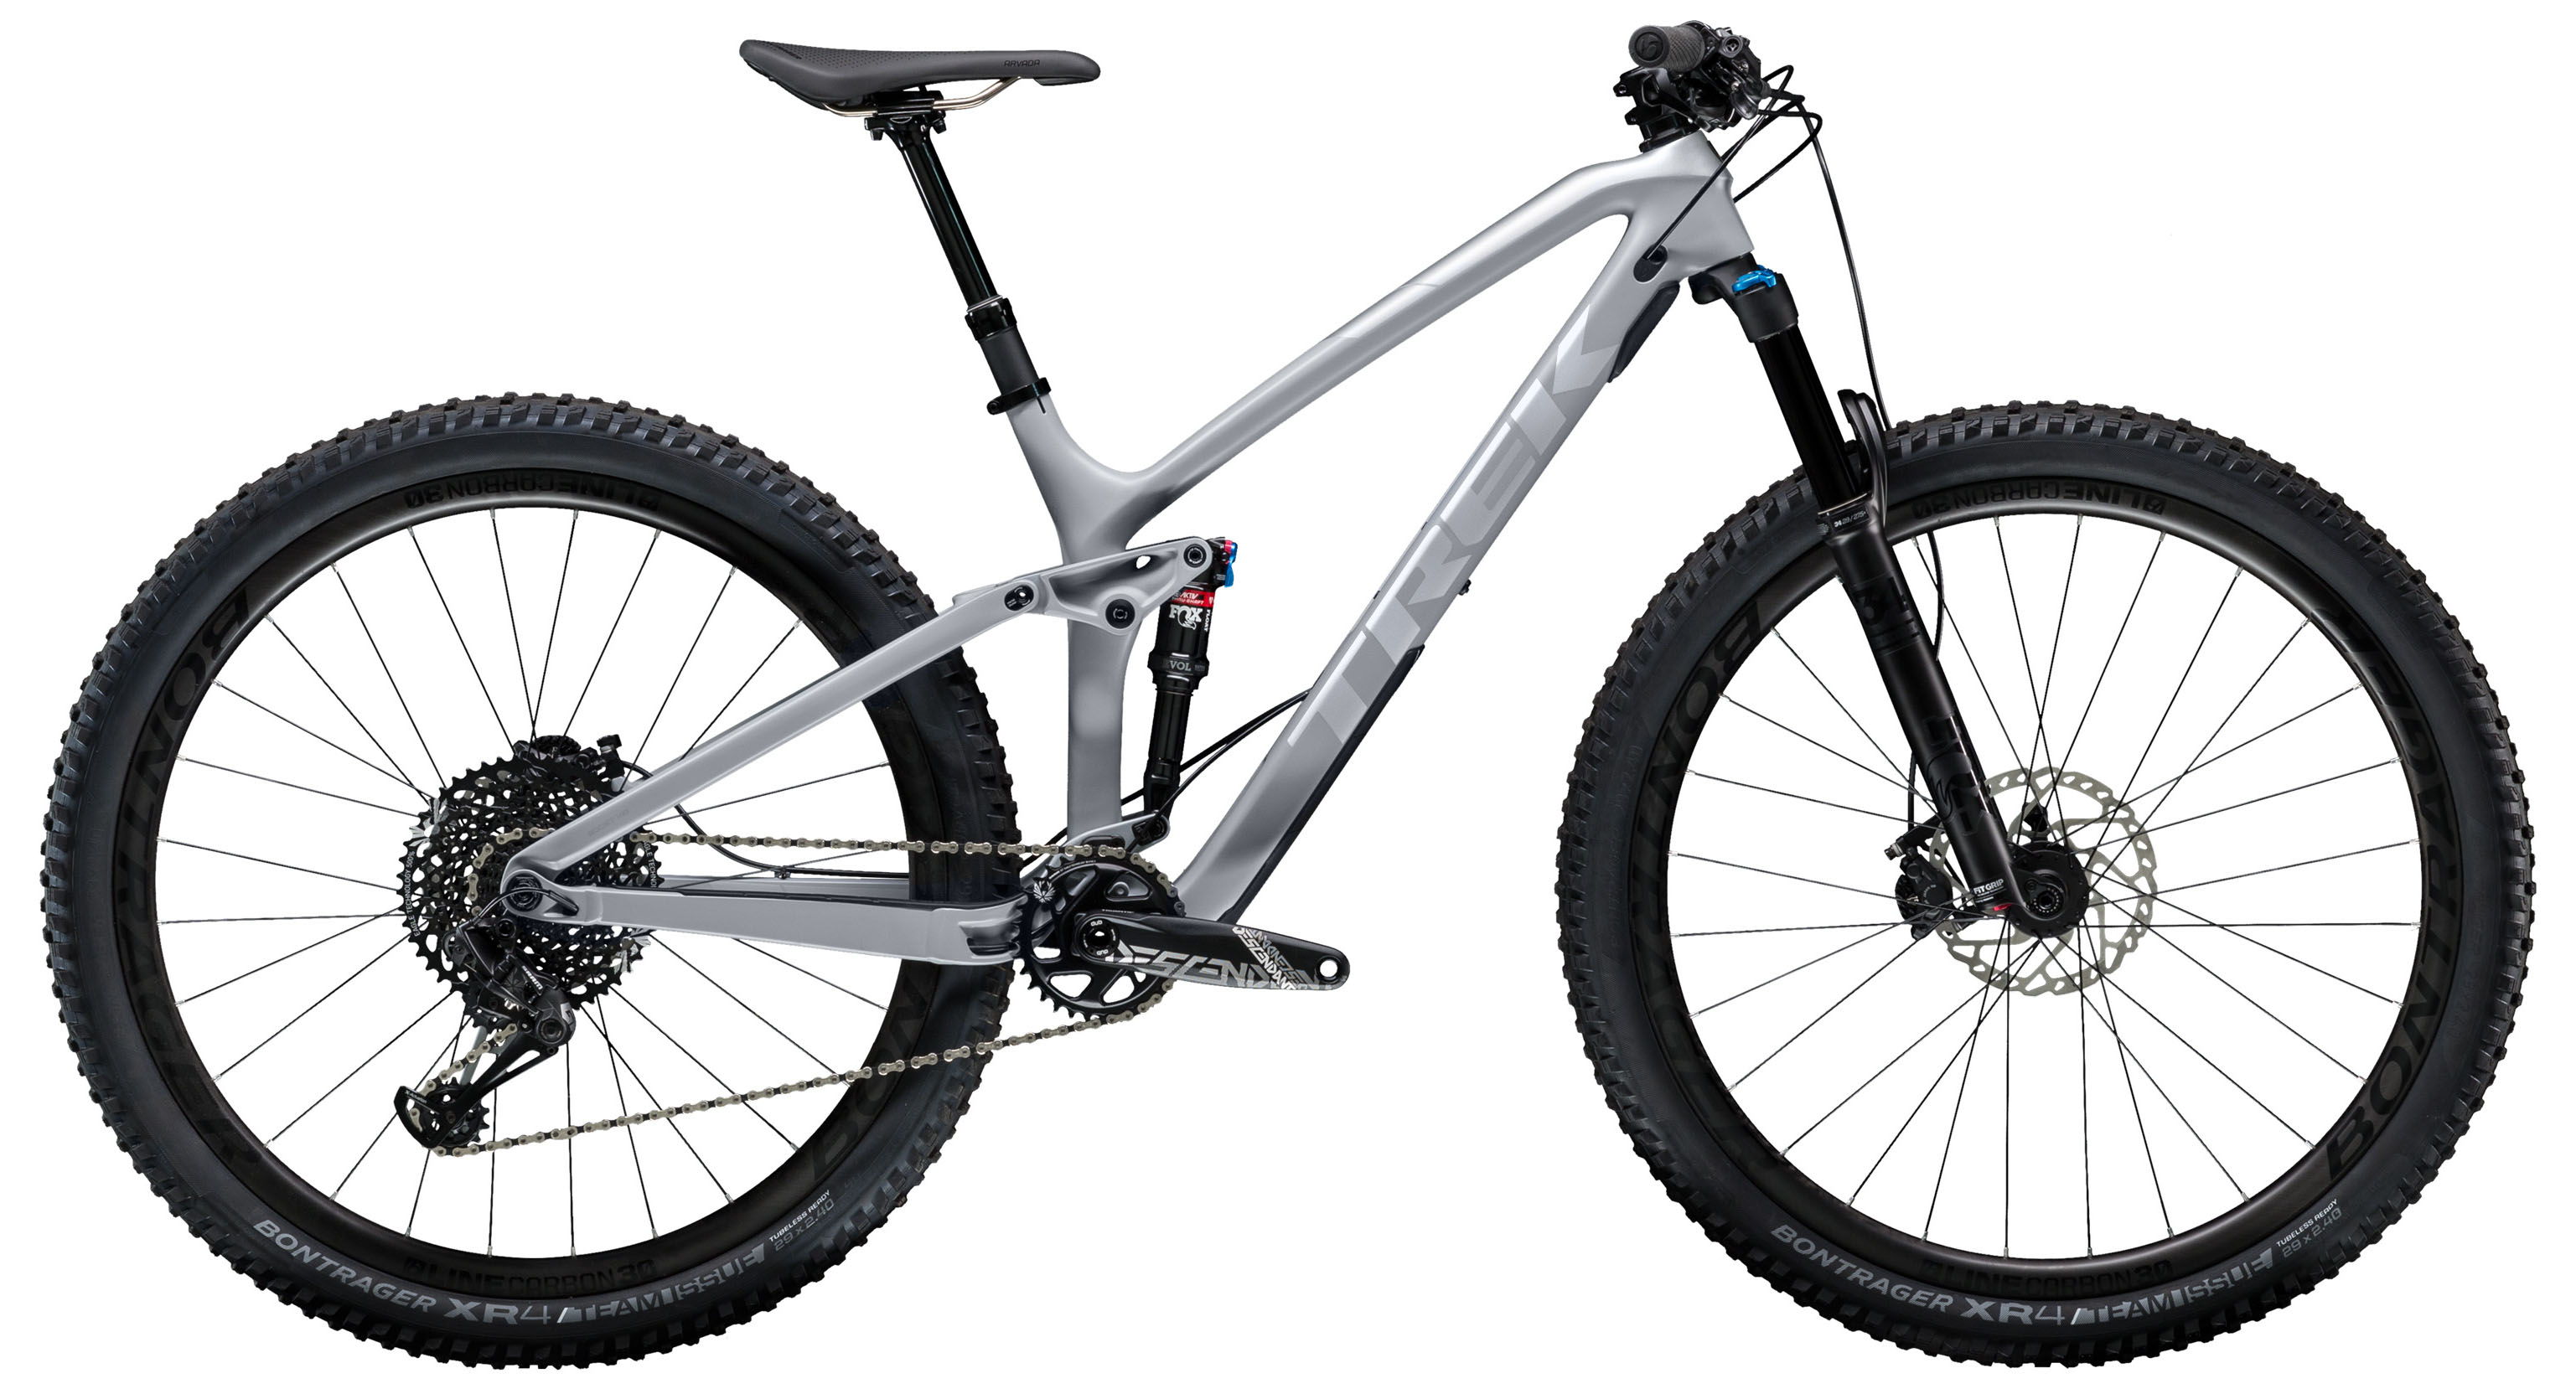  Отзывы о Двухподвесном велосипеде Trek Fuel EX 9.8 29 2019